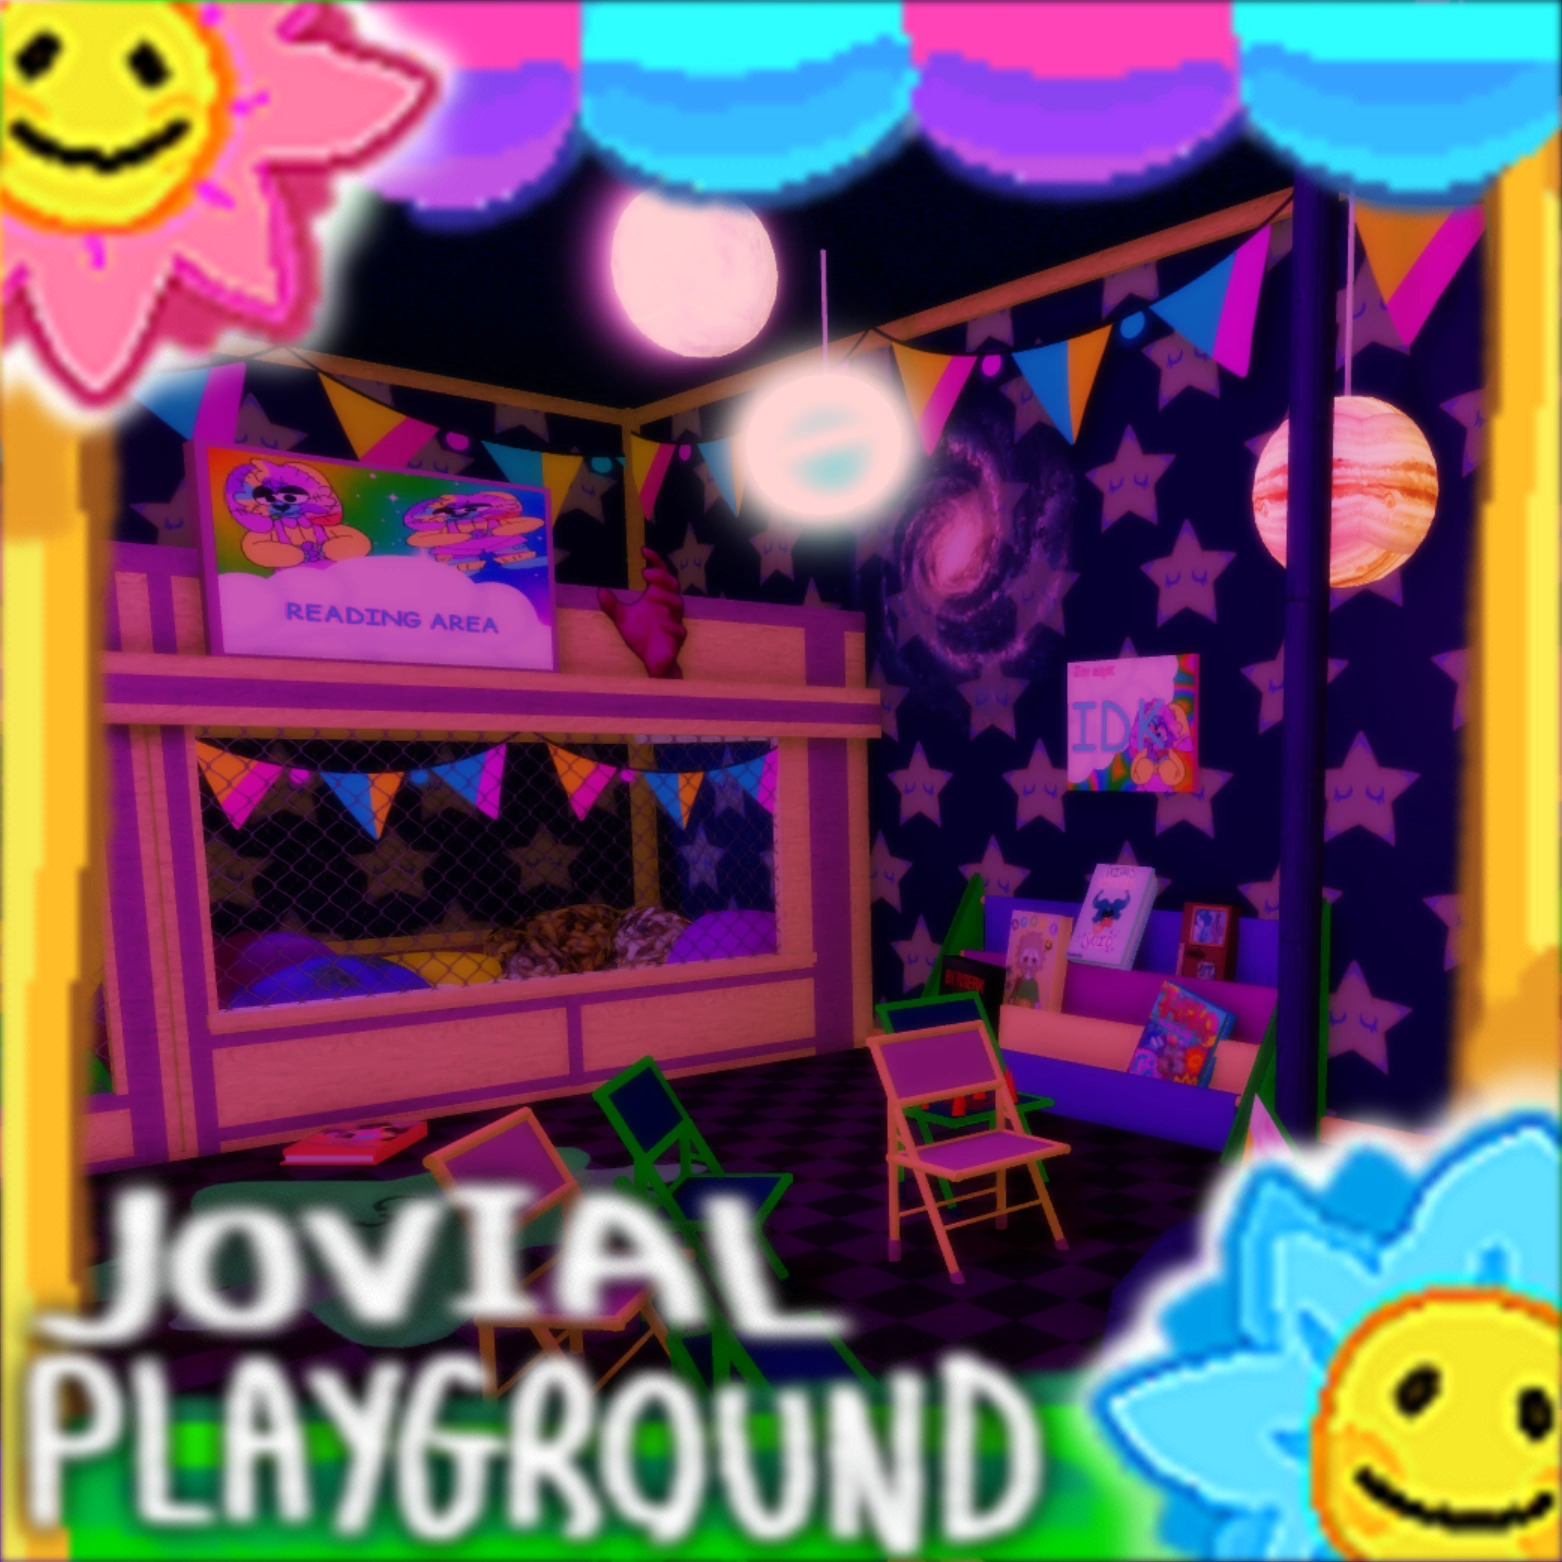 Here are my games; 1: Jovial playground 2: Dream world. #kidcore